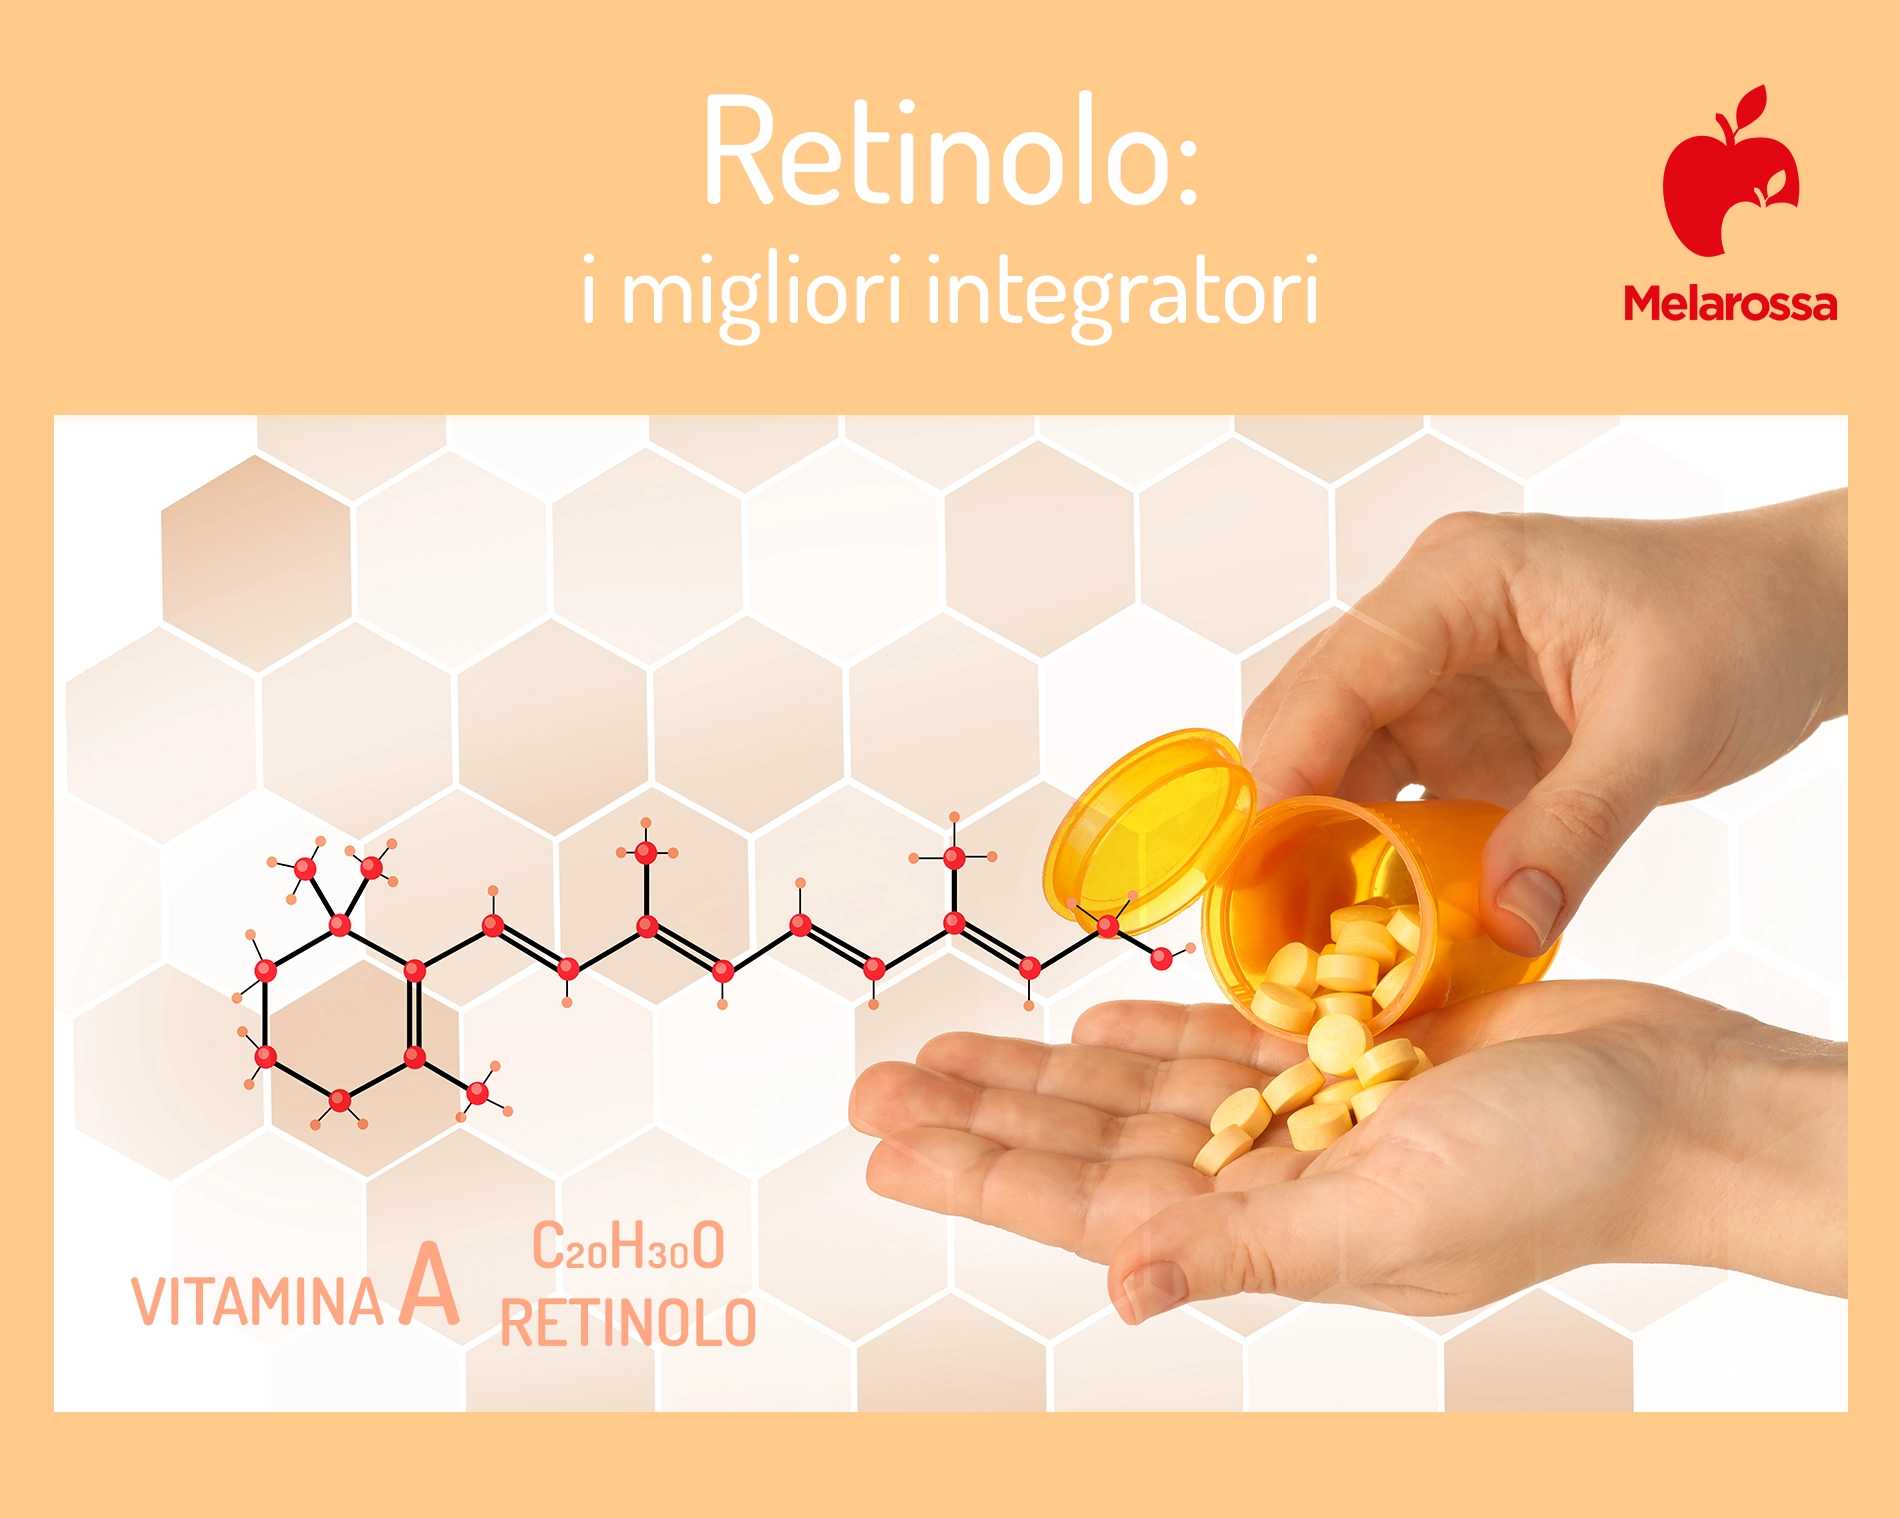 retinolo: i migliori integratori 